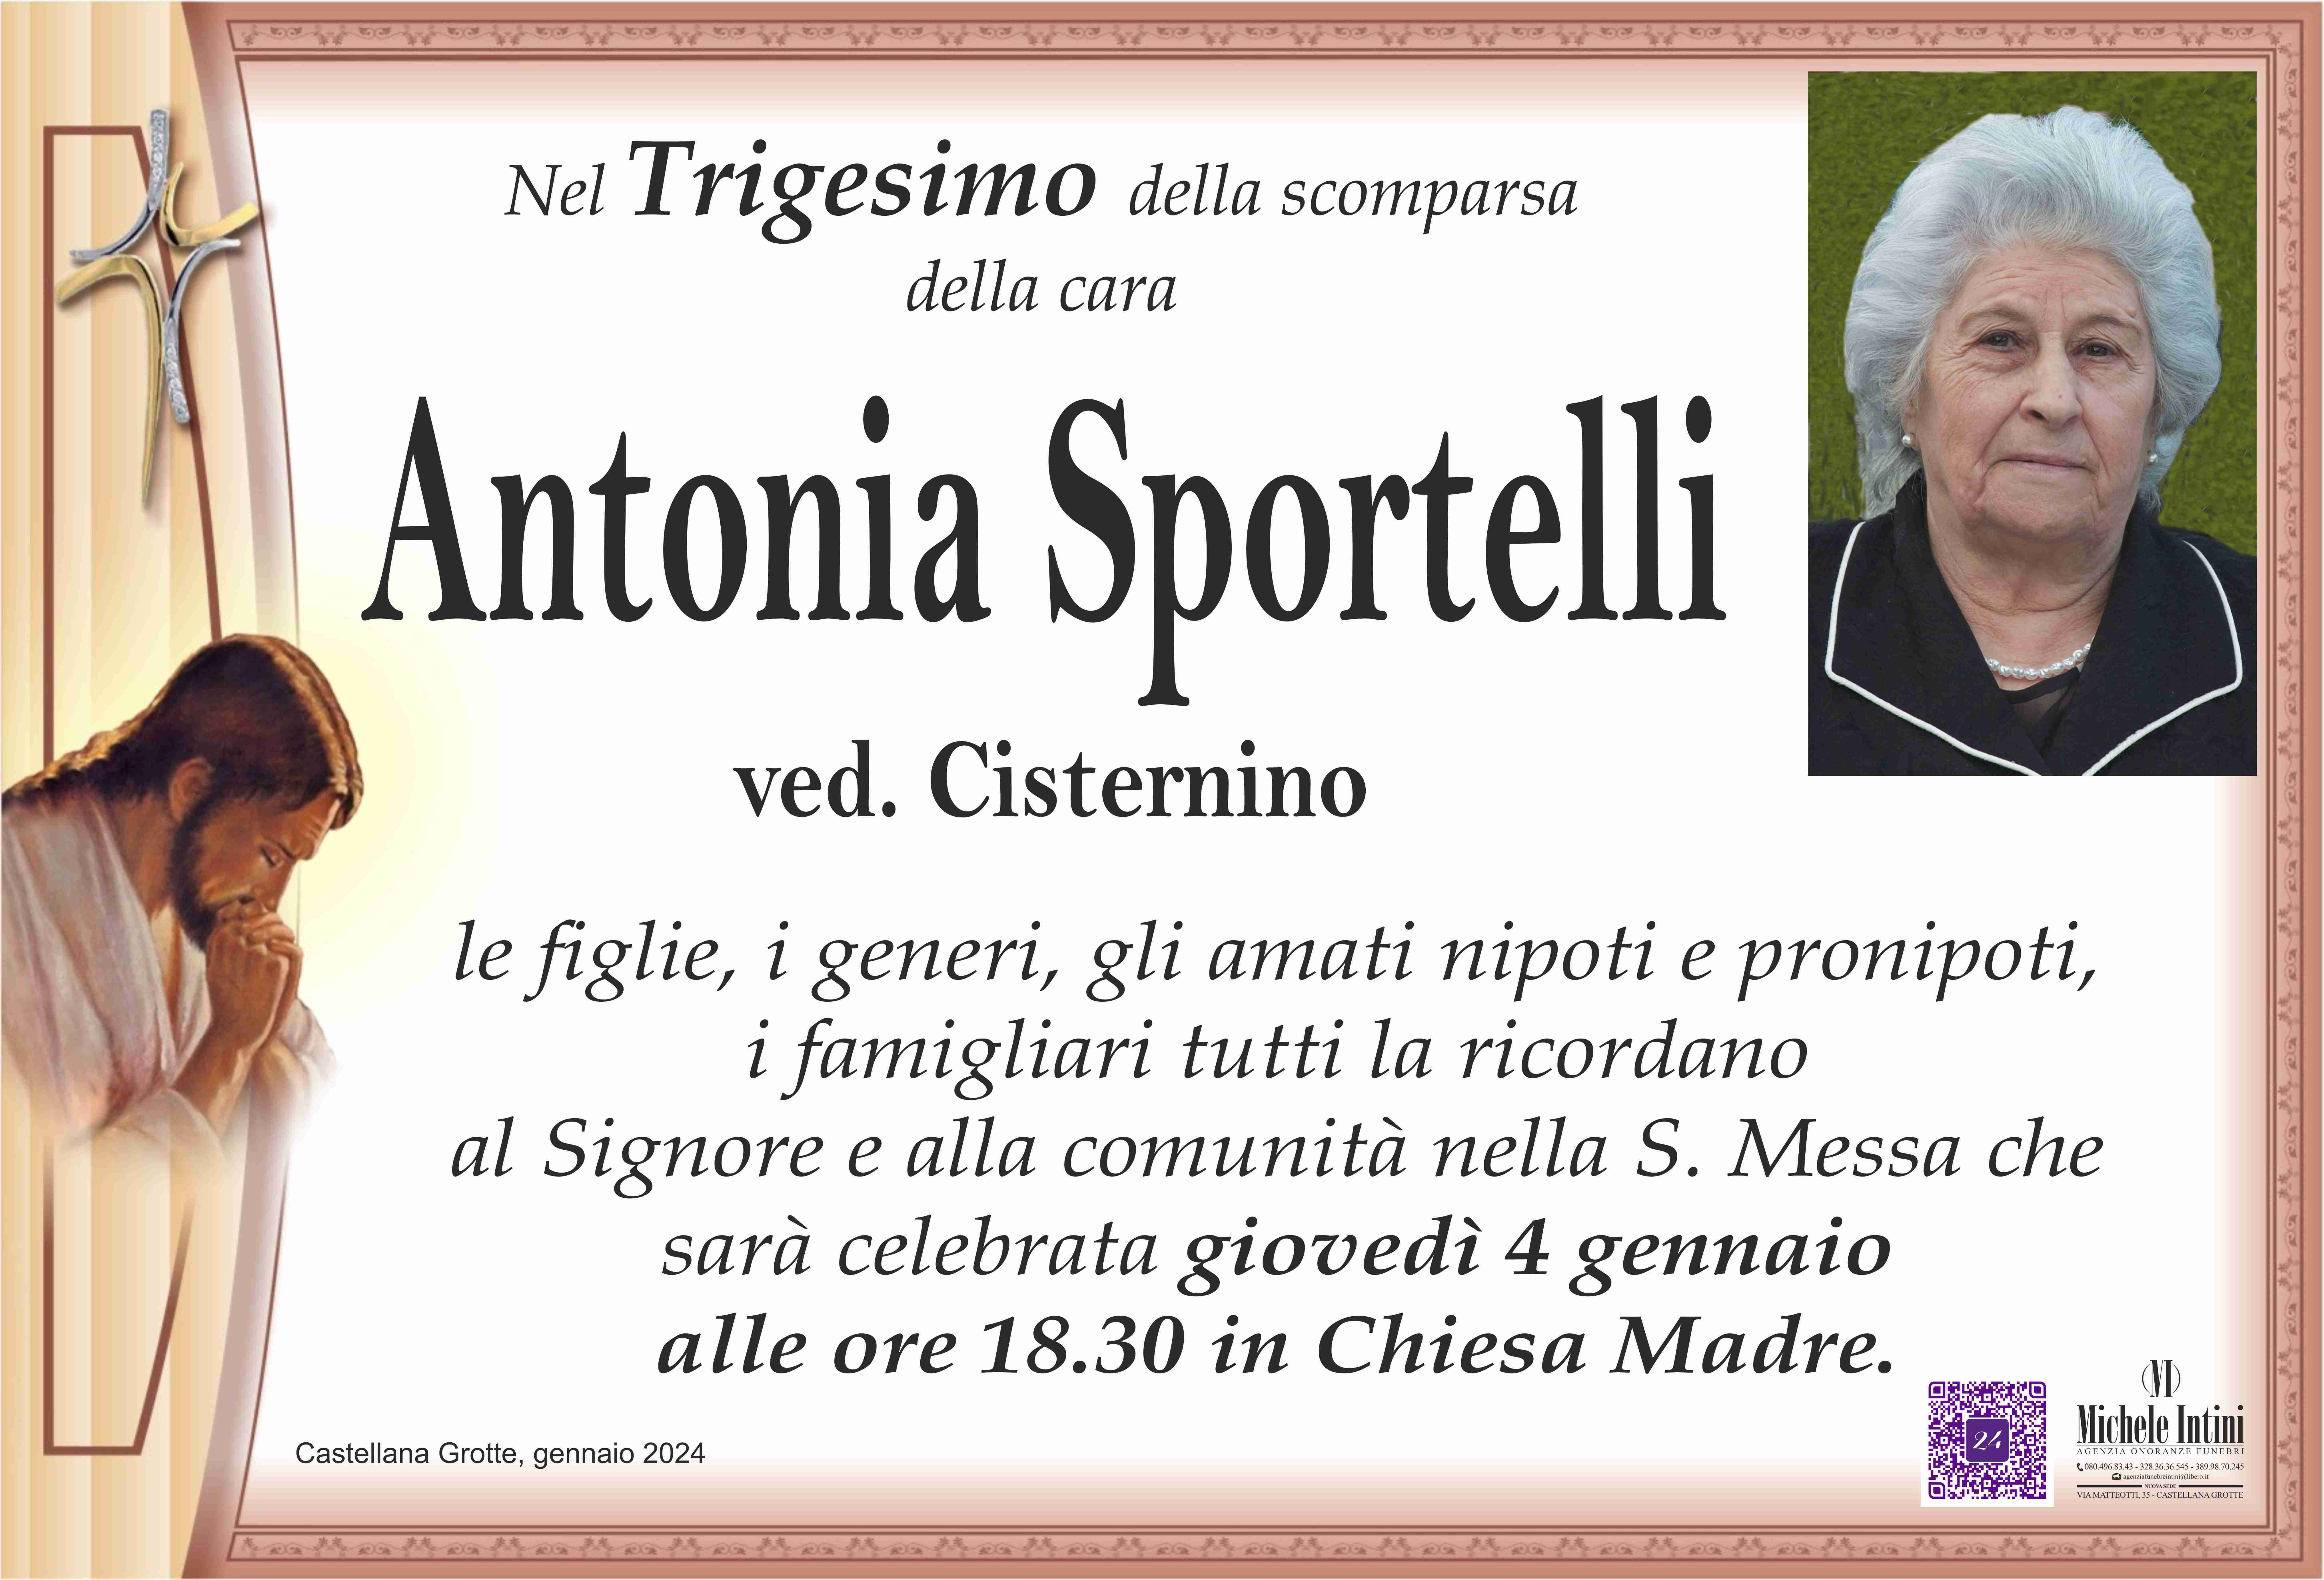 Antonia Sportelli